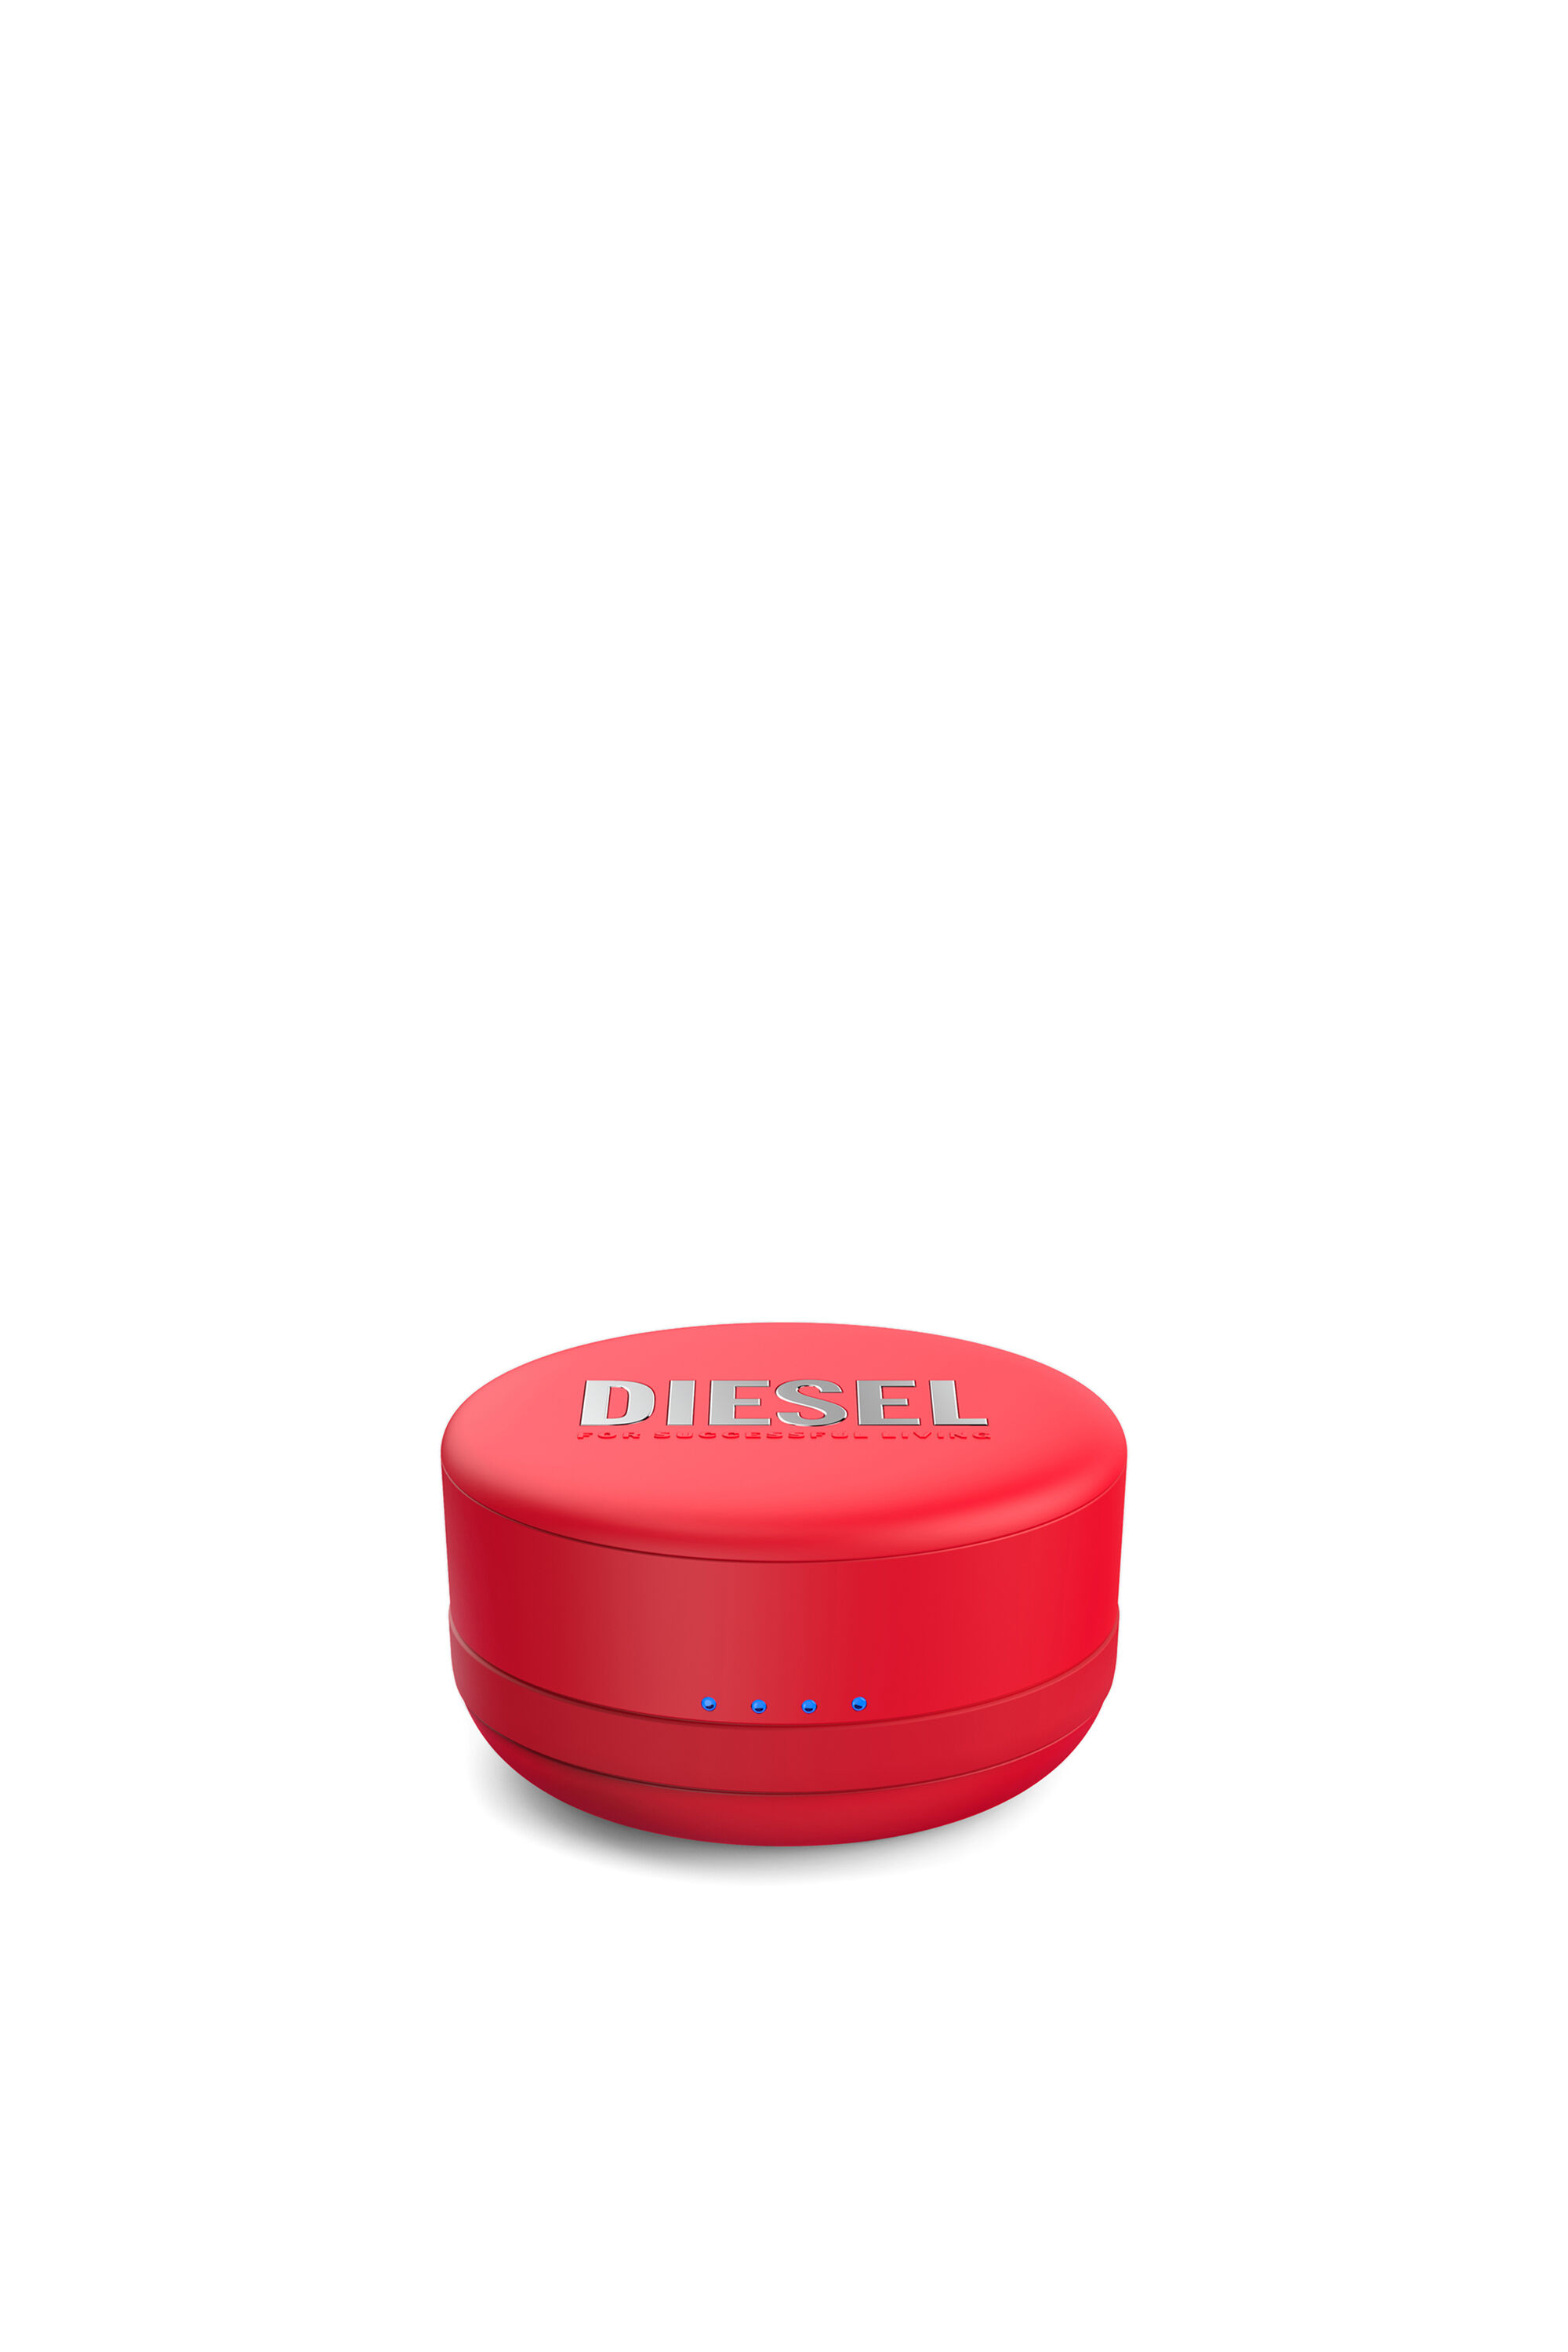 Diesel - 45476 TRUE WIRELESS, Unisex Wireless Earbuds in Red - Image 4